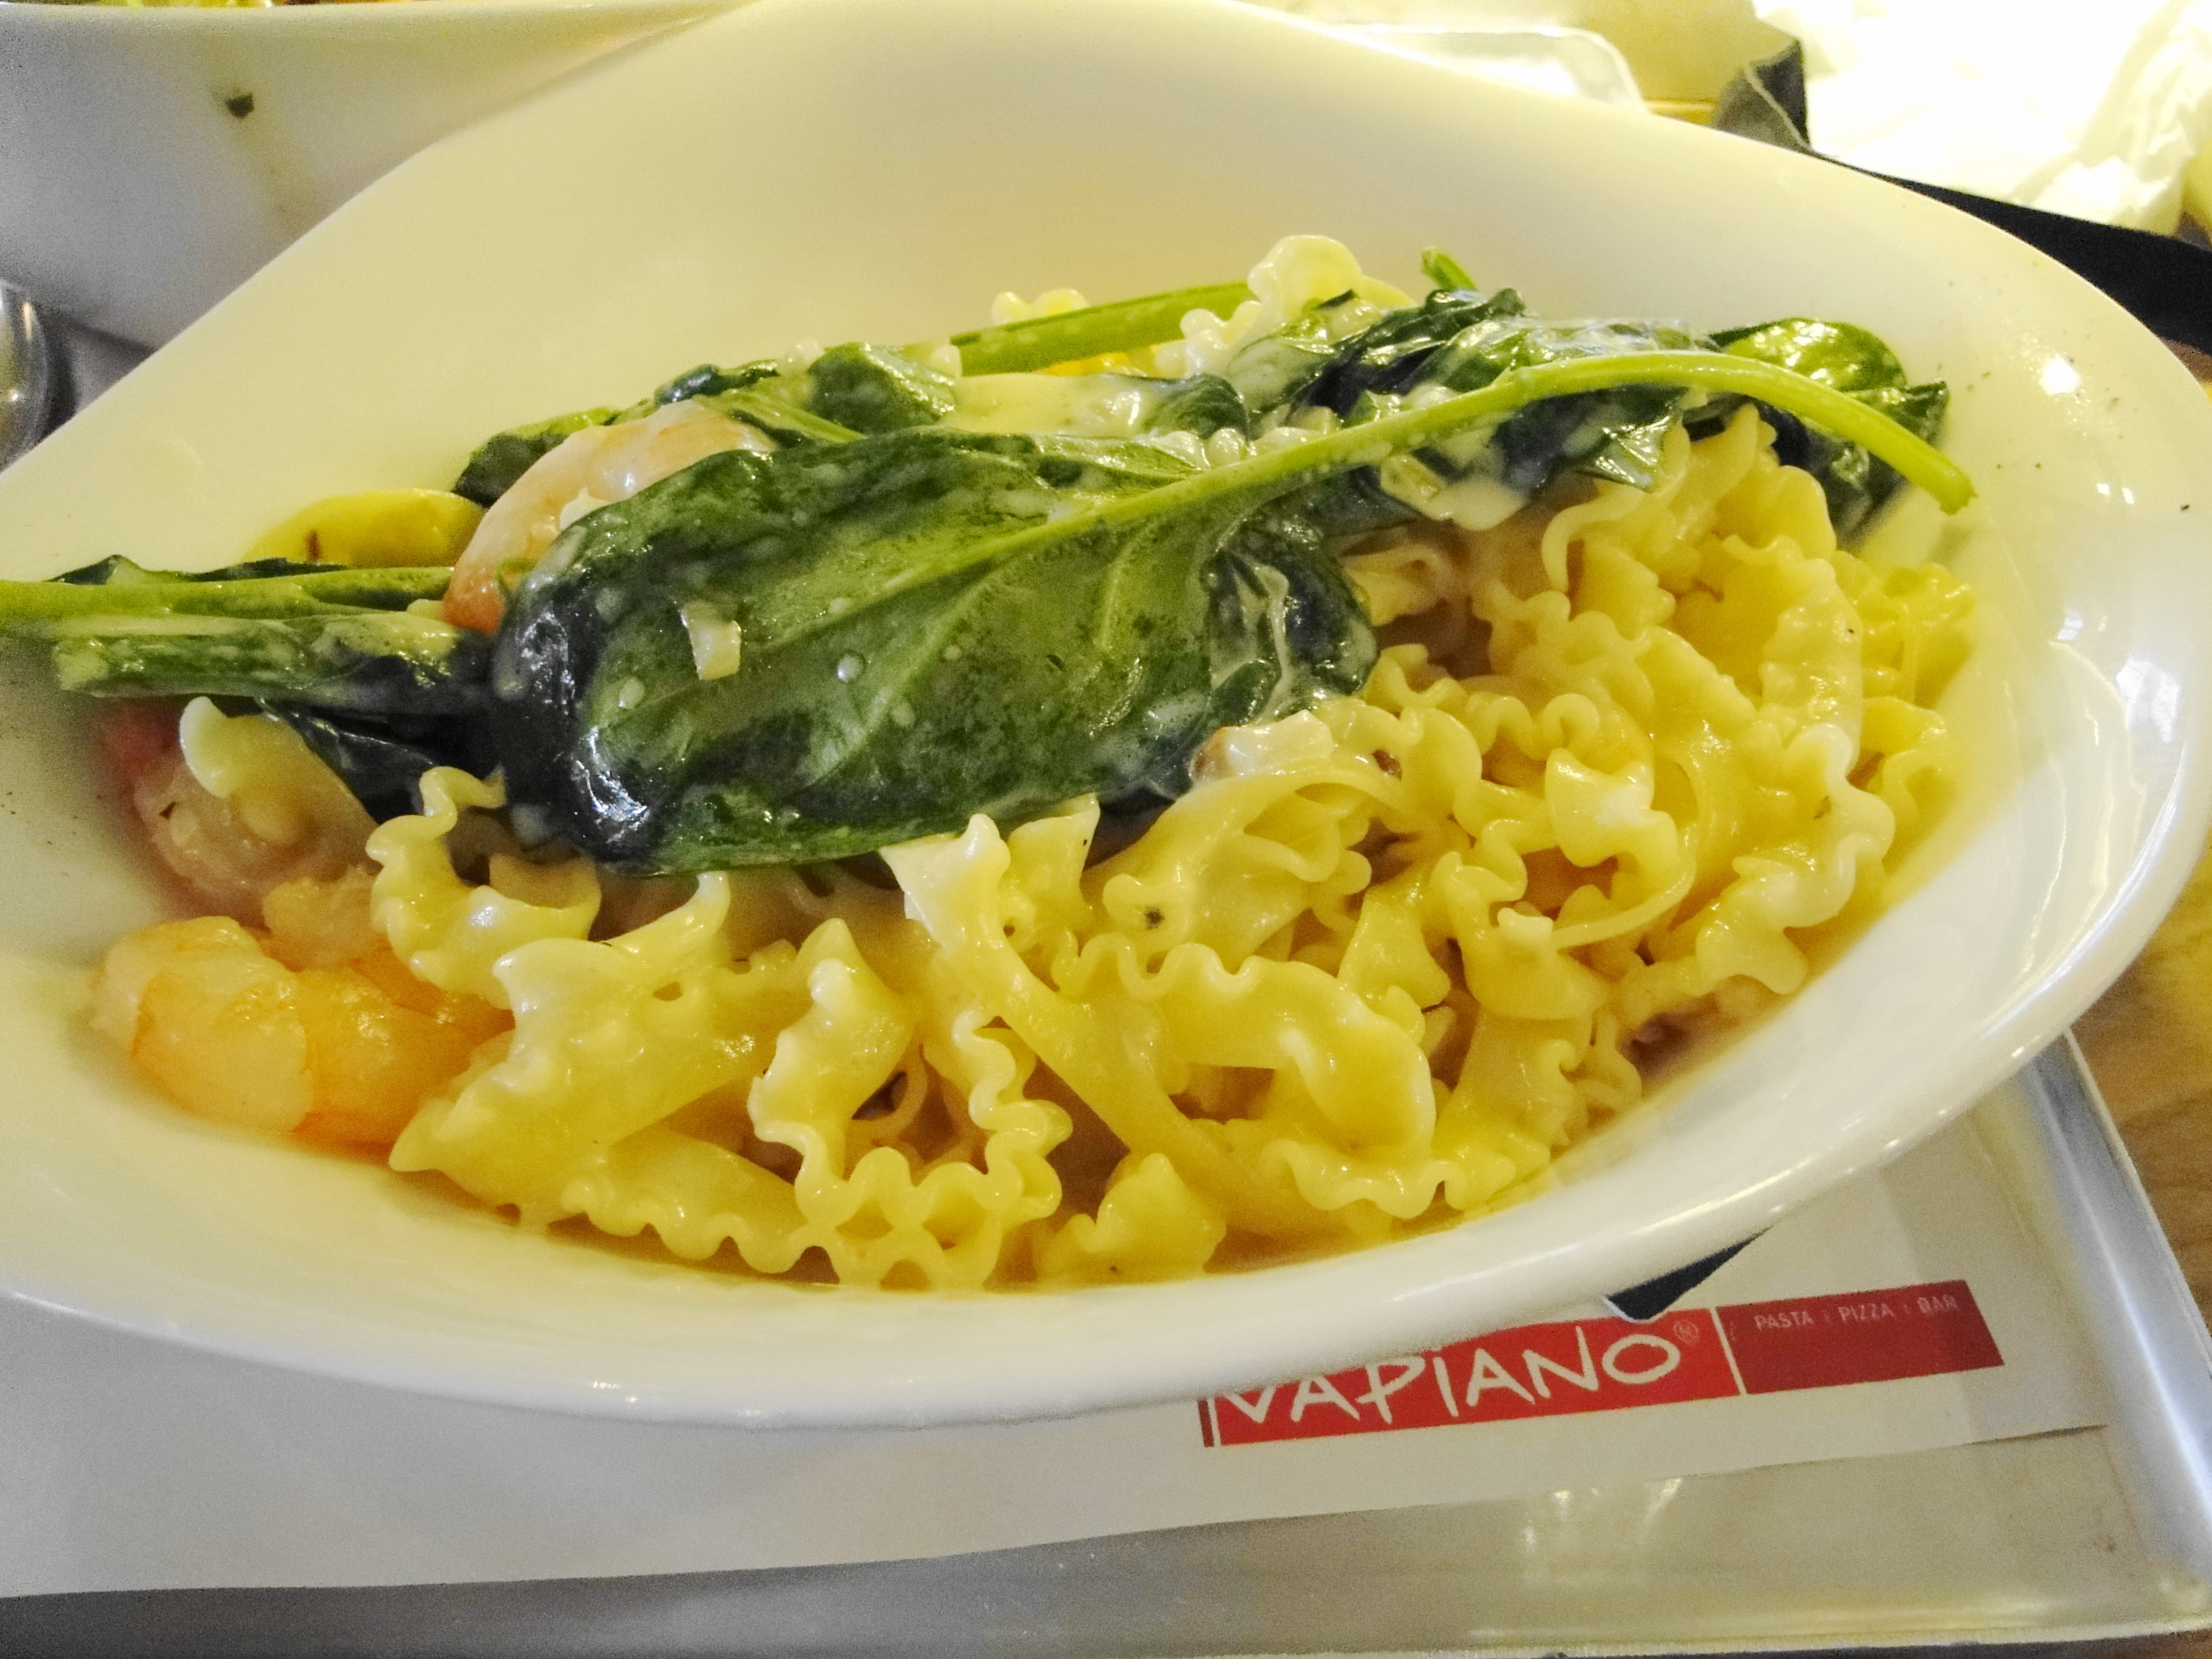 Vapiano - Pasta Scampi e Spinaci für 8,75 €